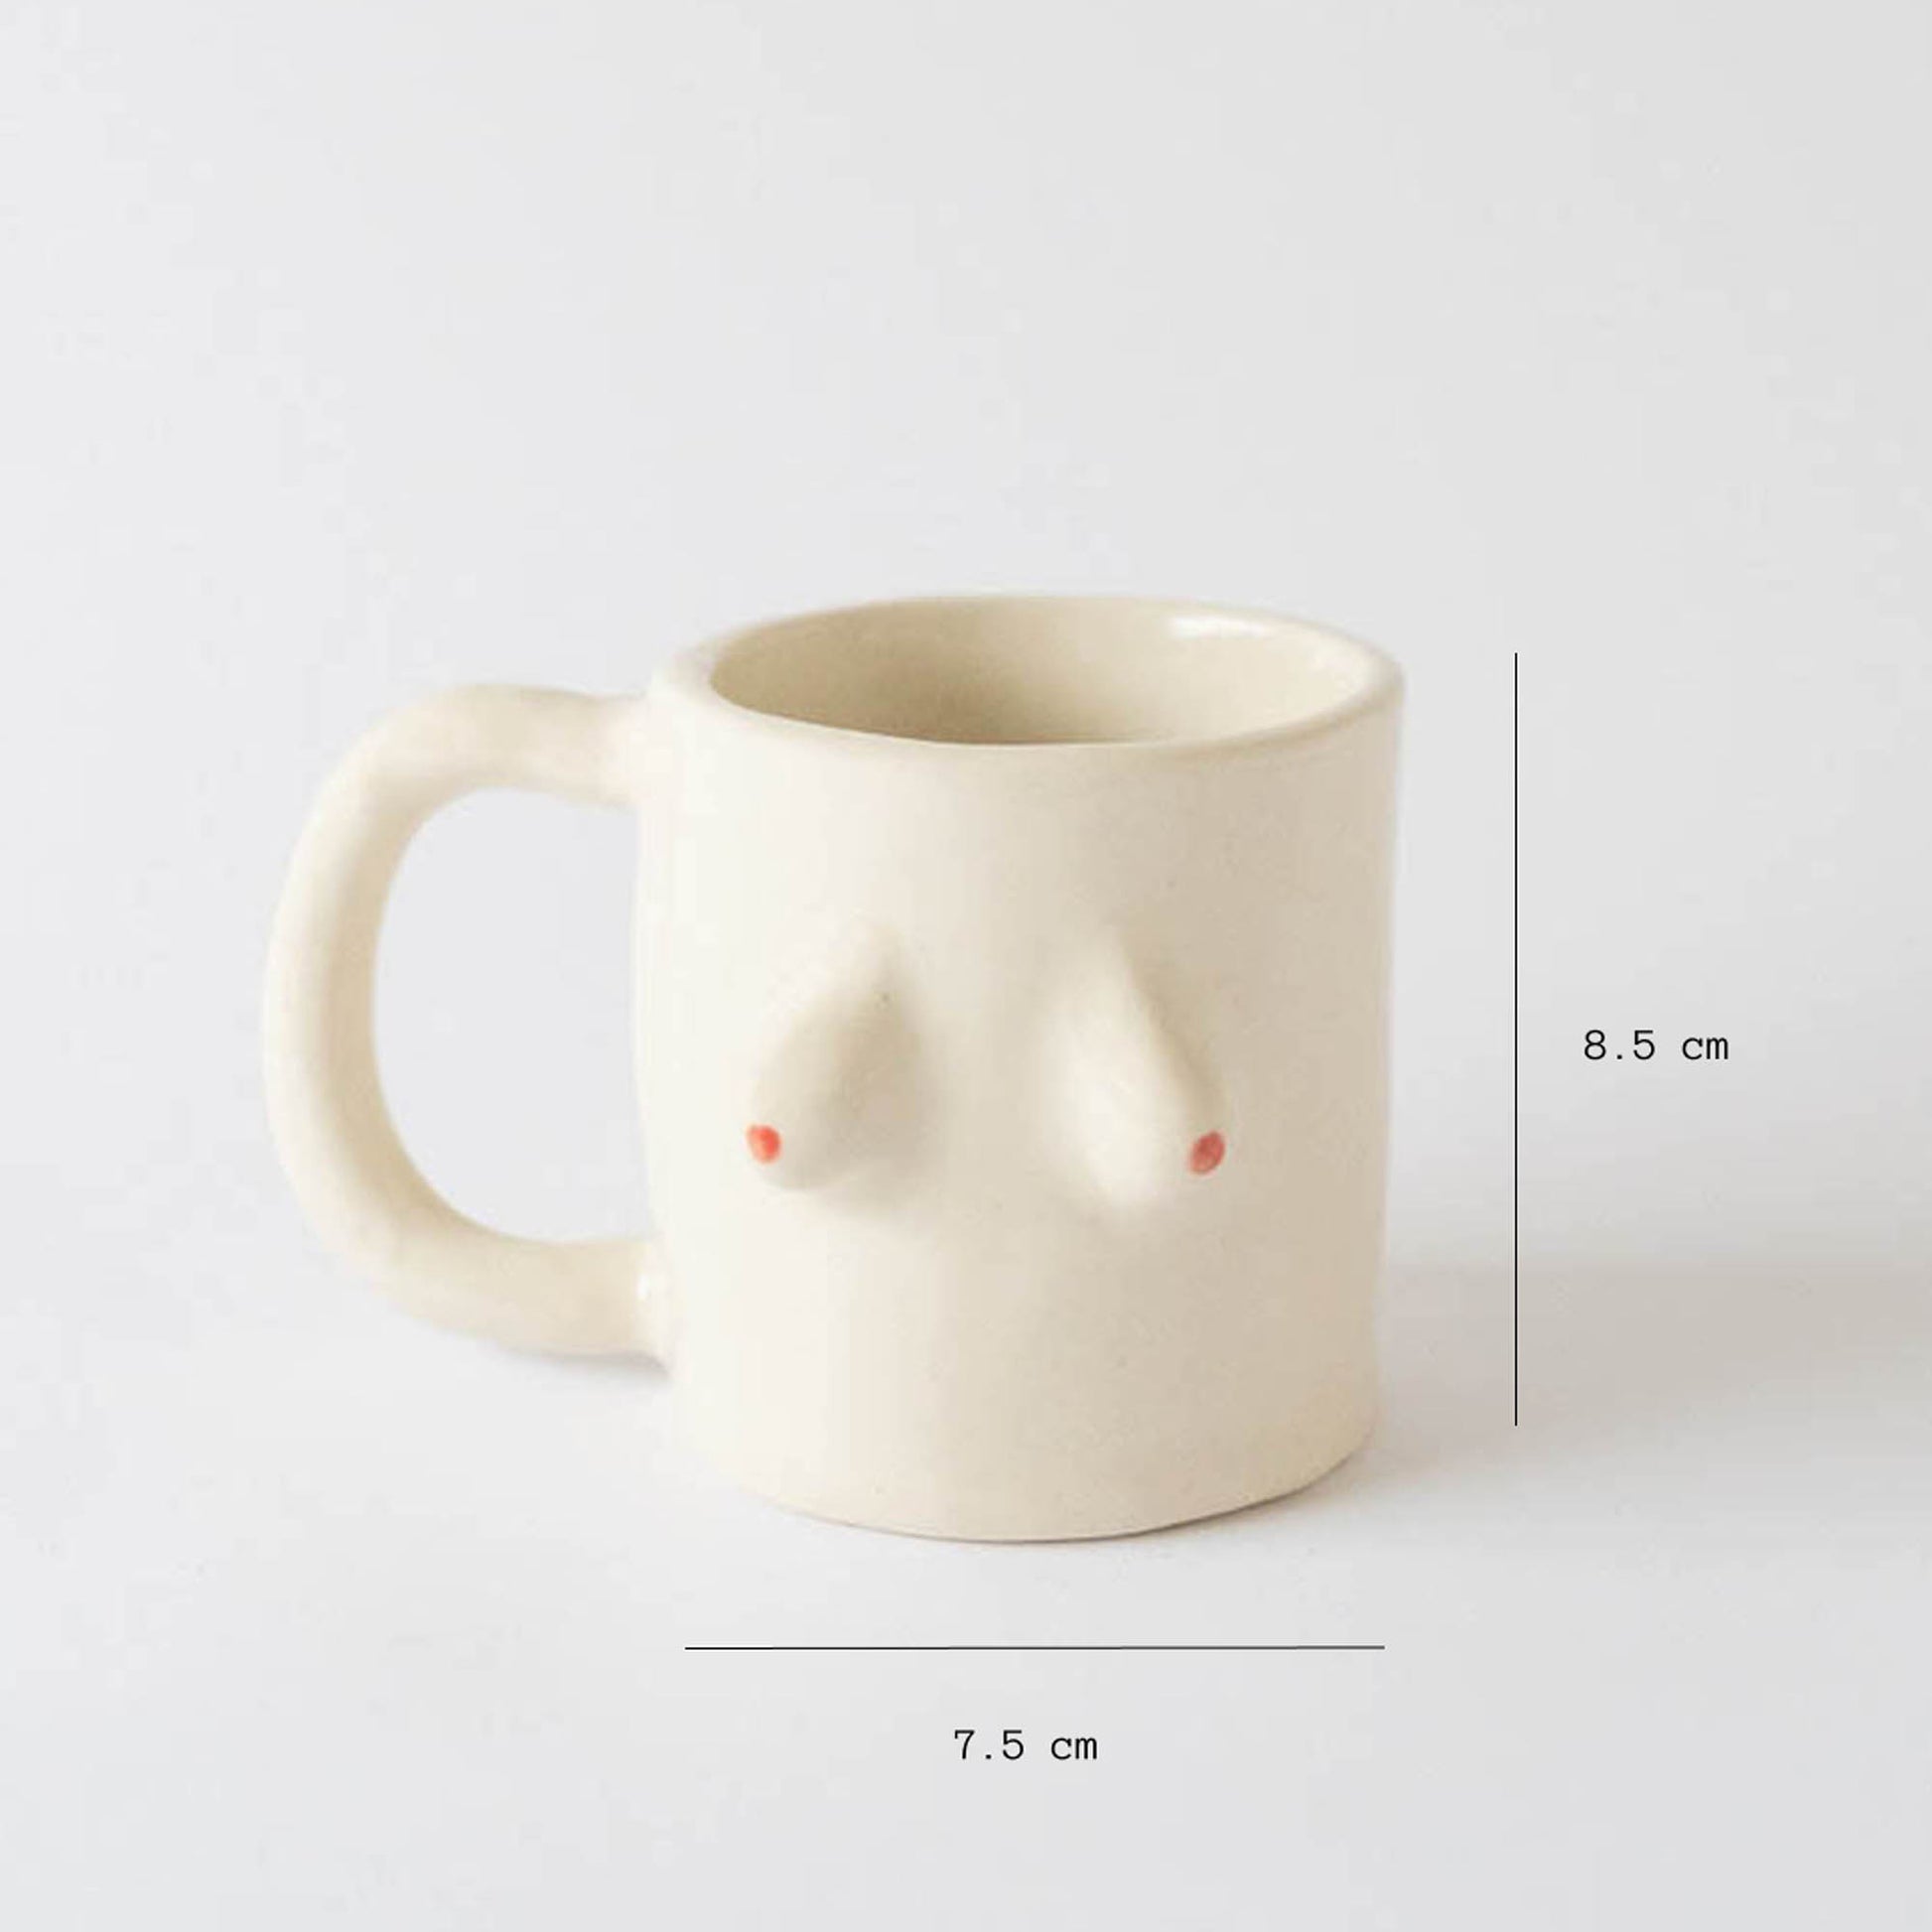 Boobie coffee mug, boobs, boob mug, mug, coffee mug, coffee, boobies, tits,  tits mug, iced coffee mug, tittie -  Portugal